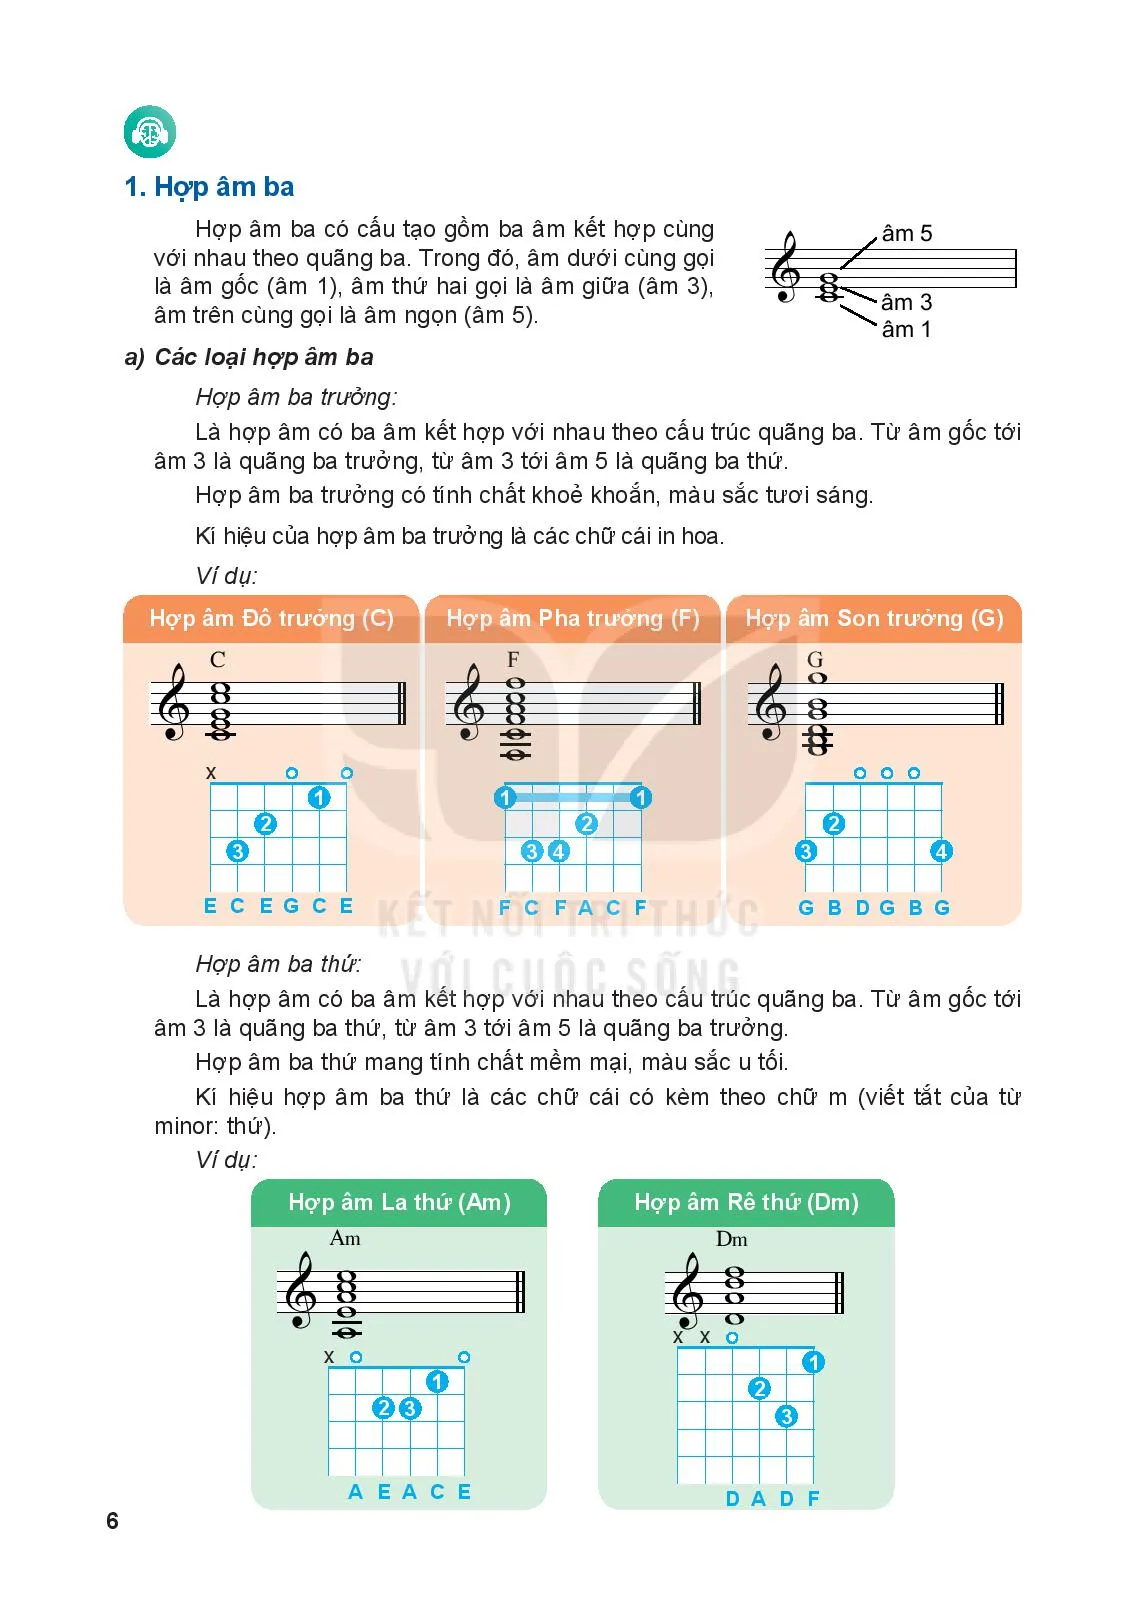 Bài 1: Hợp âm ba, các hợp âm ba chính trong điệu trưởng và điệu thứ